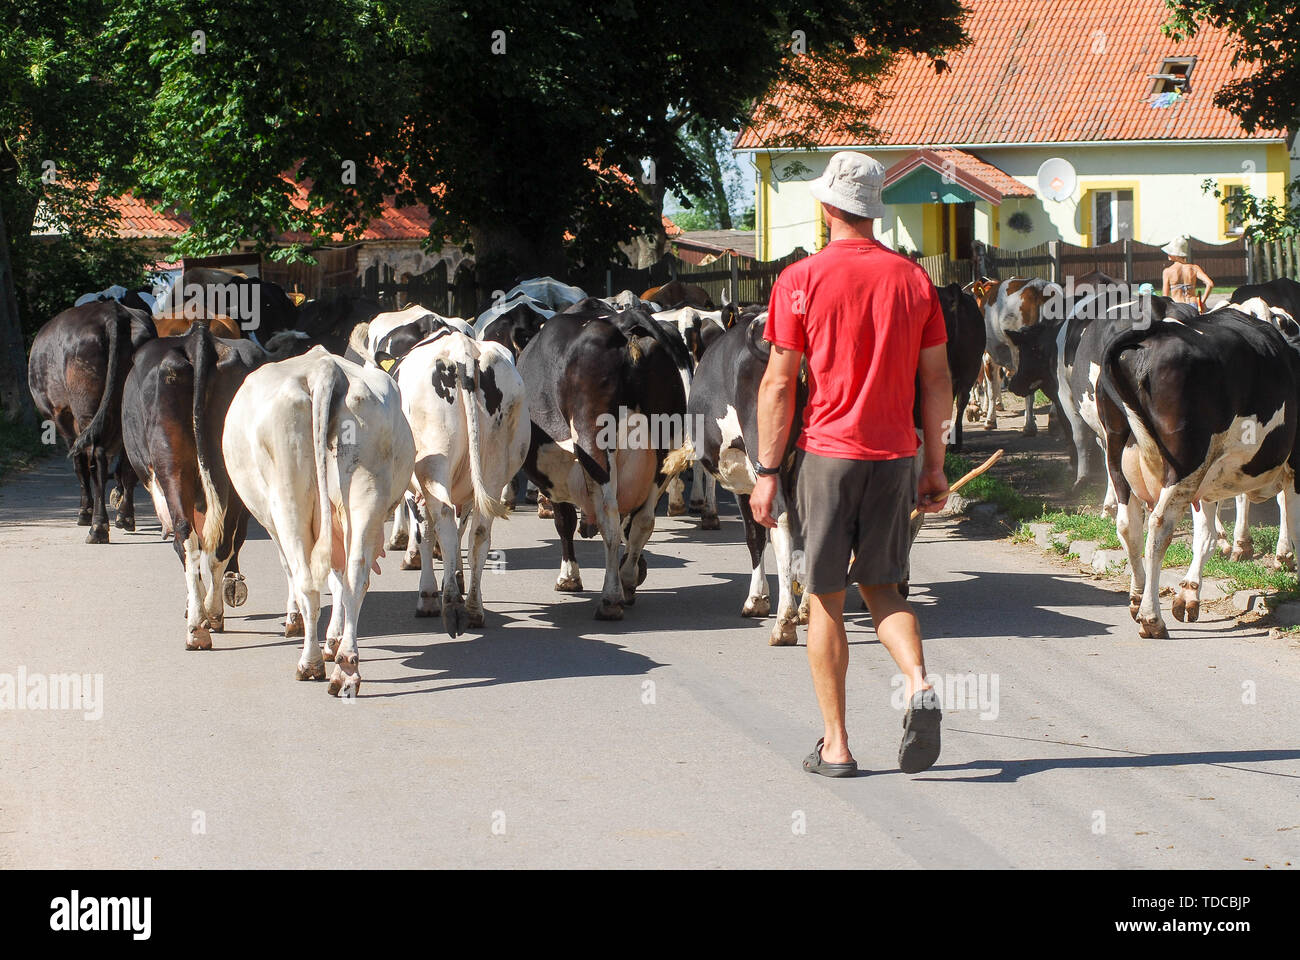 Cows in Nowe Guty, Poland. July 3rd 2019 © Wojciech Strozyk / Alamy Stock Photo Stock Photo